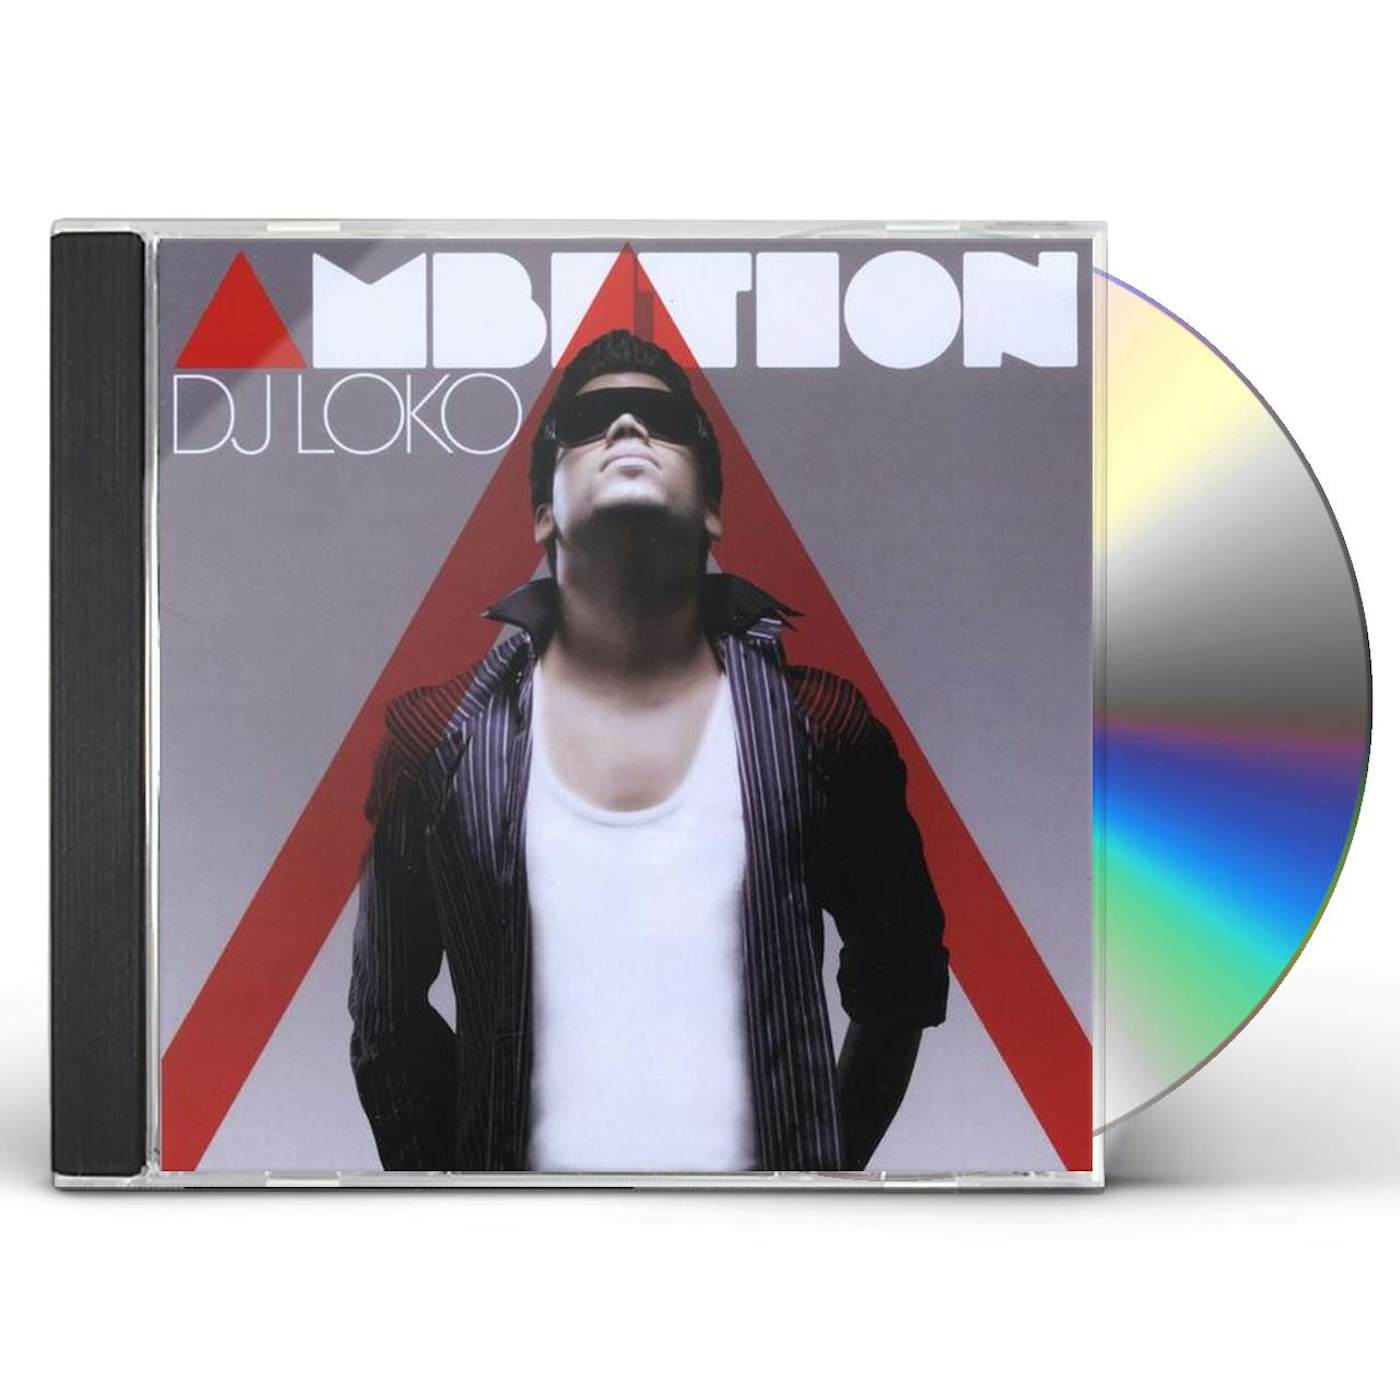 Loko Dj AMBITION CD